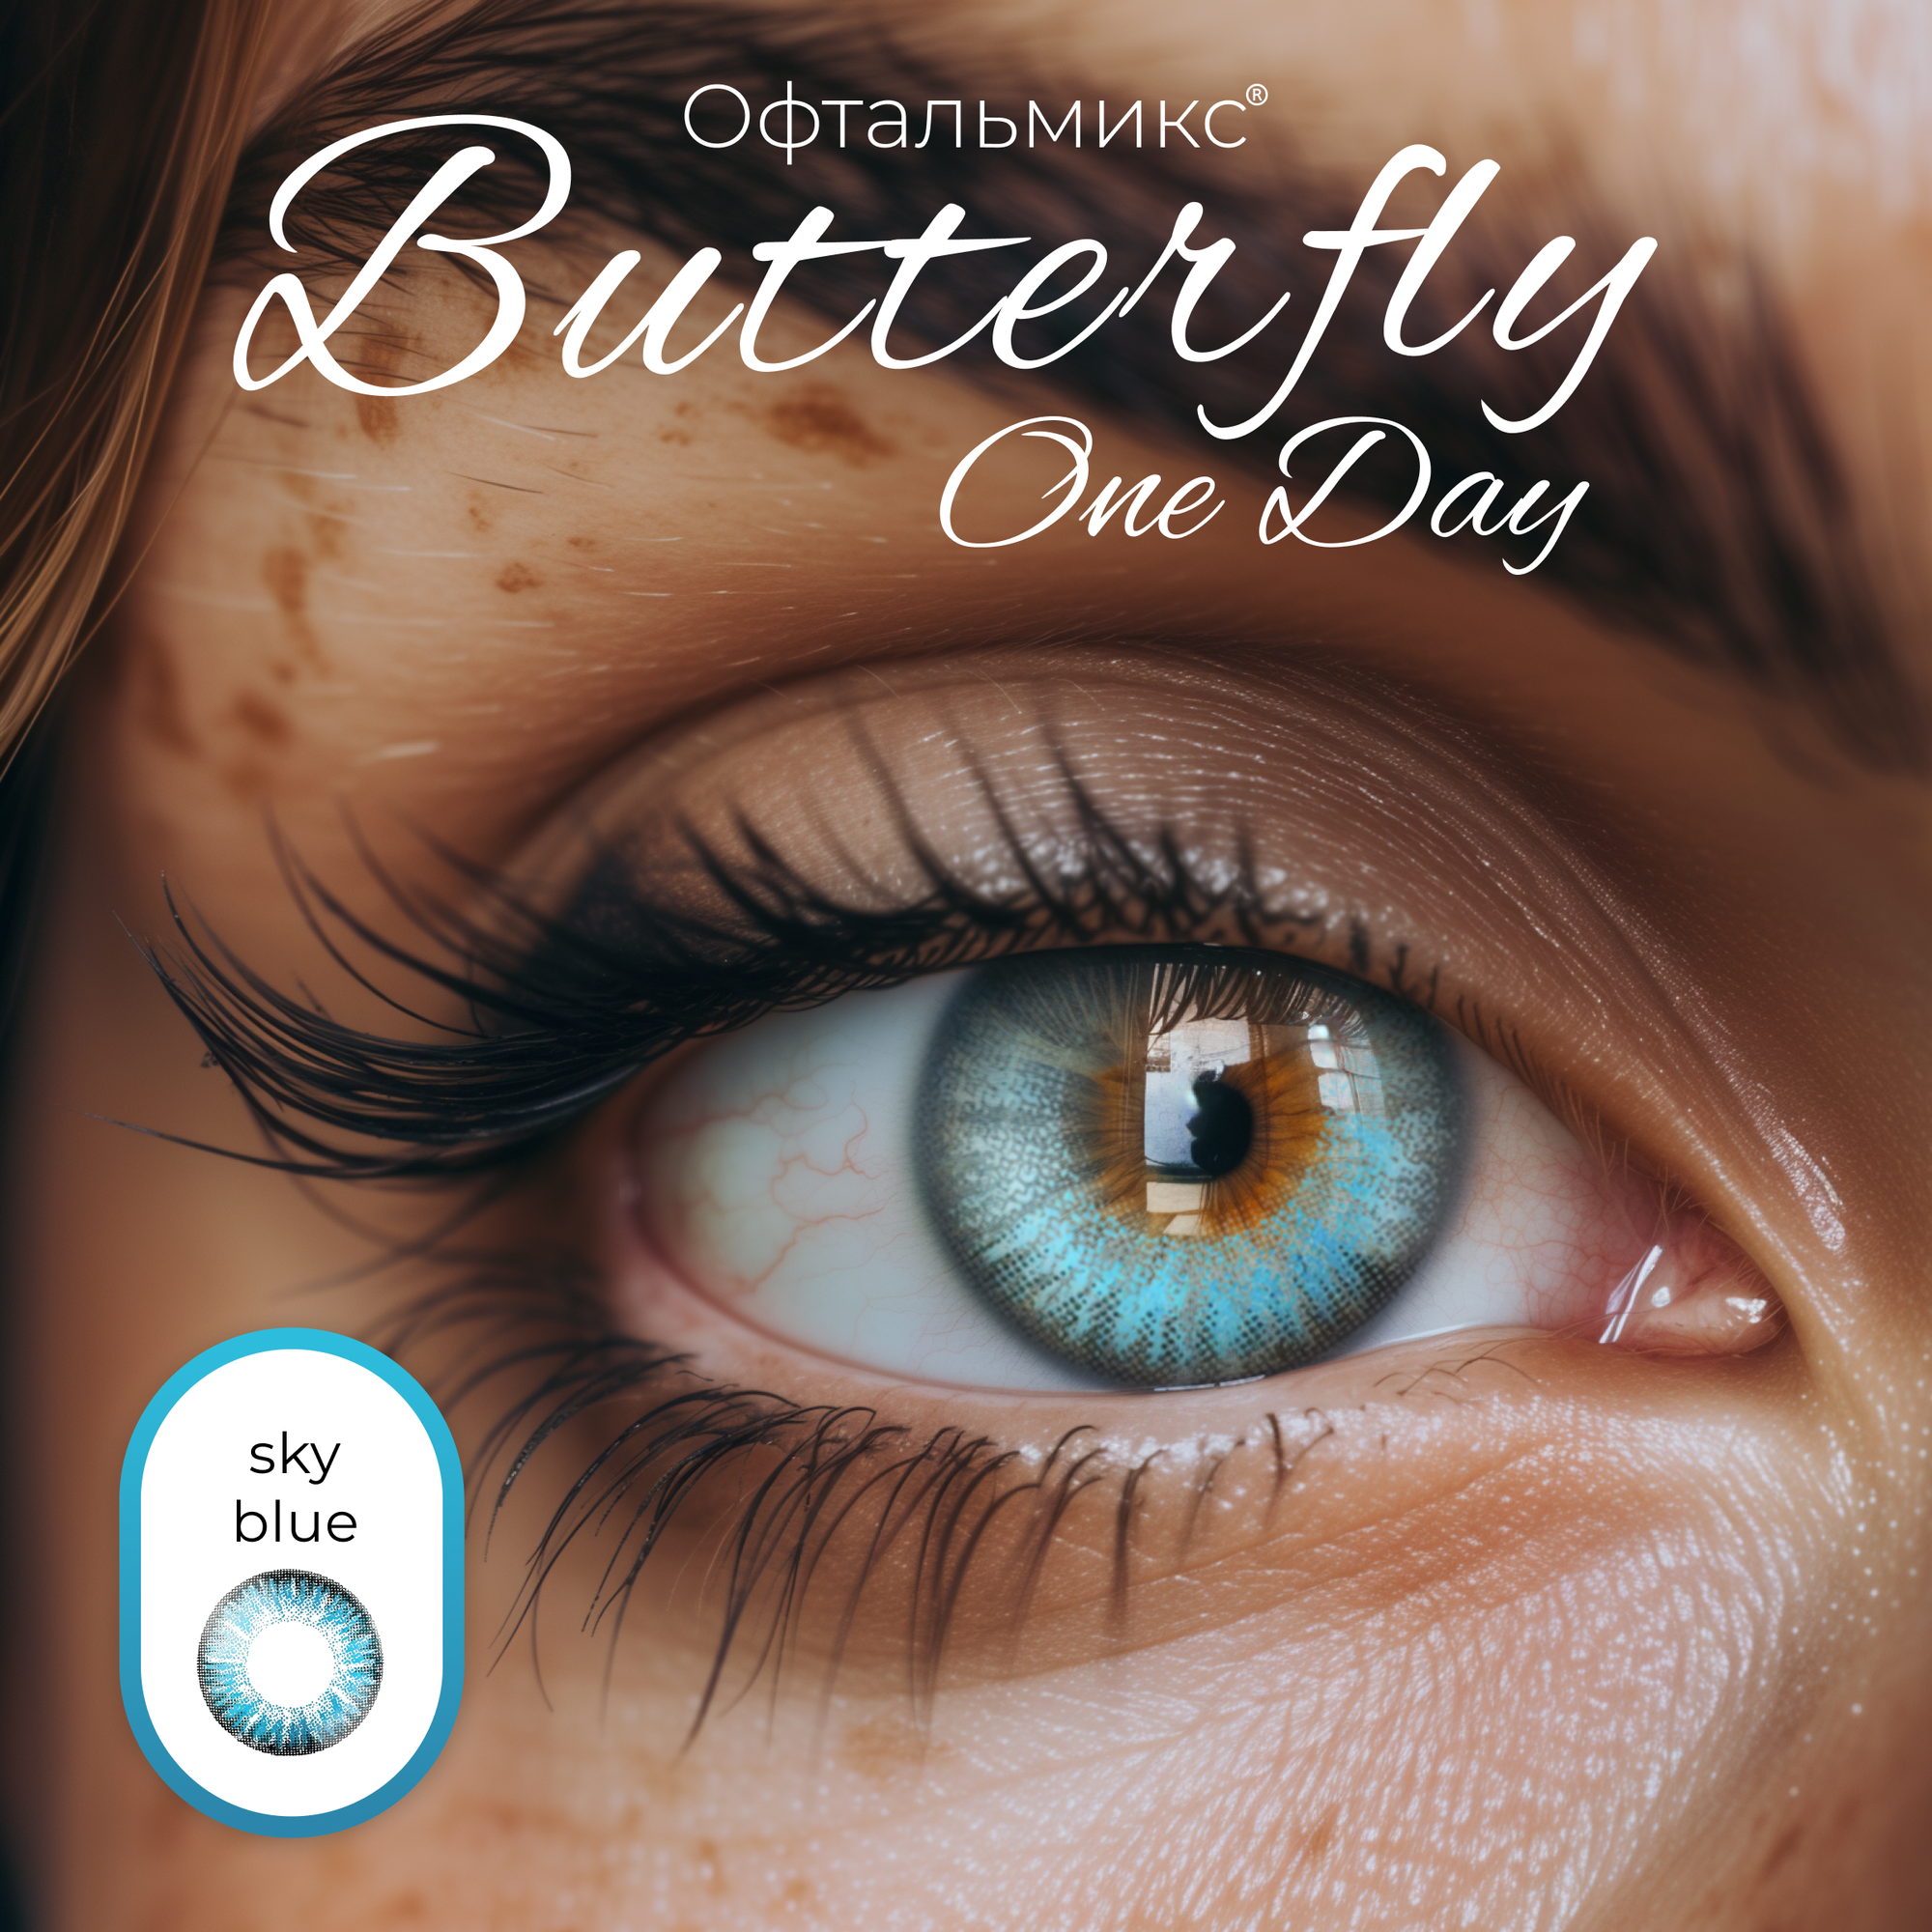 Цветные контактные линзы Офтальмикс Butterfly One Day (2 линзы) -1.50 R 8.6 Sky Blue (Голубой)